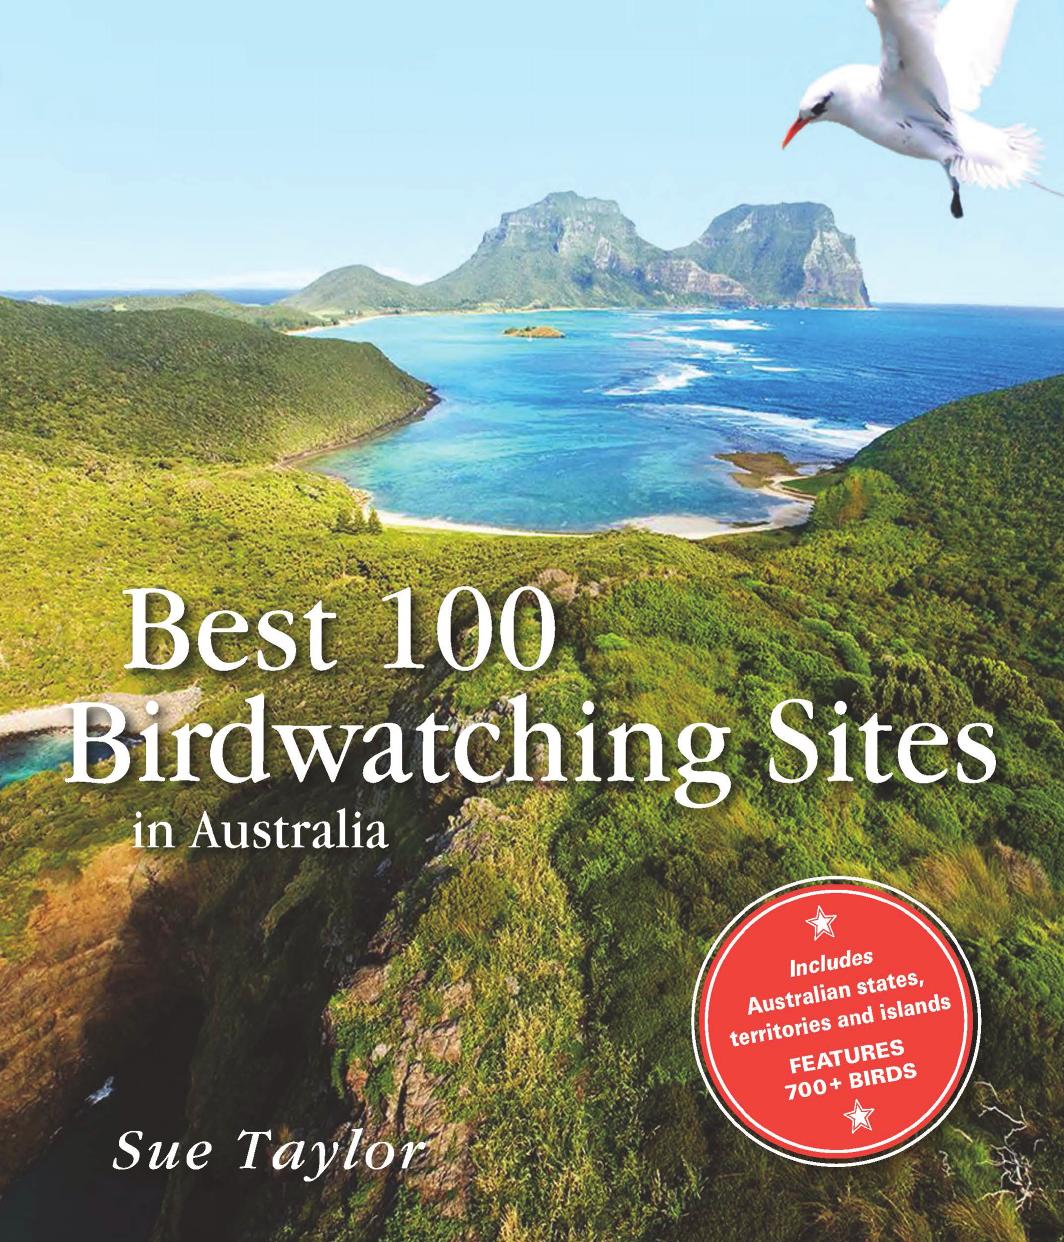 Best 100 Birdwatching Sites in Australia by Sue Taylor